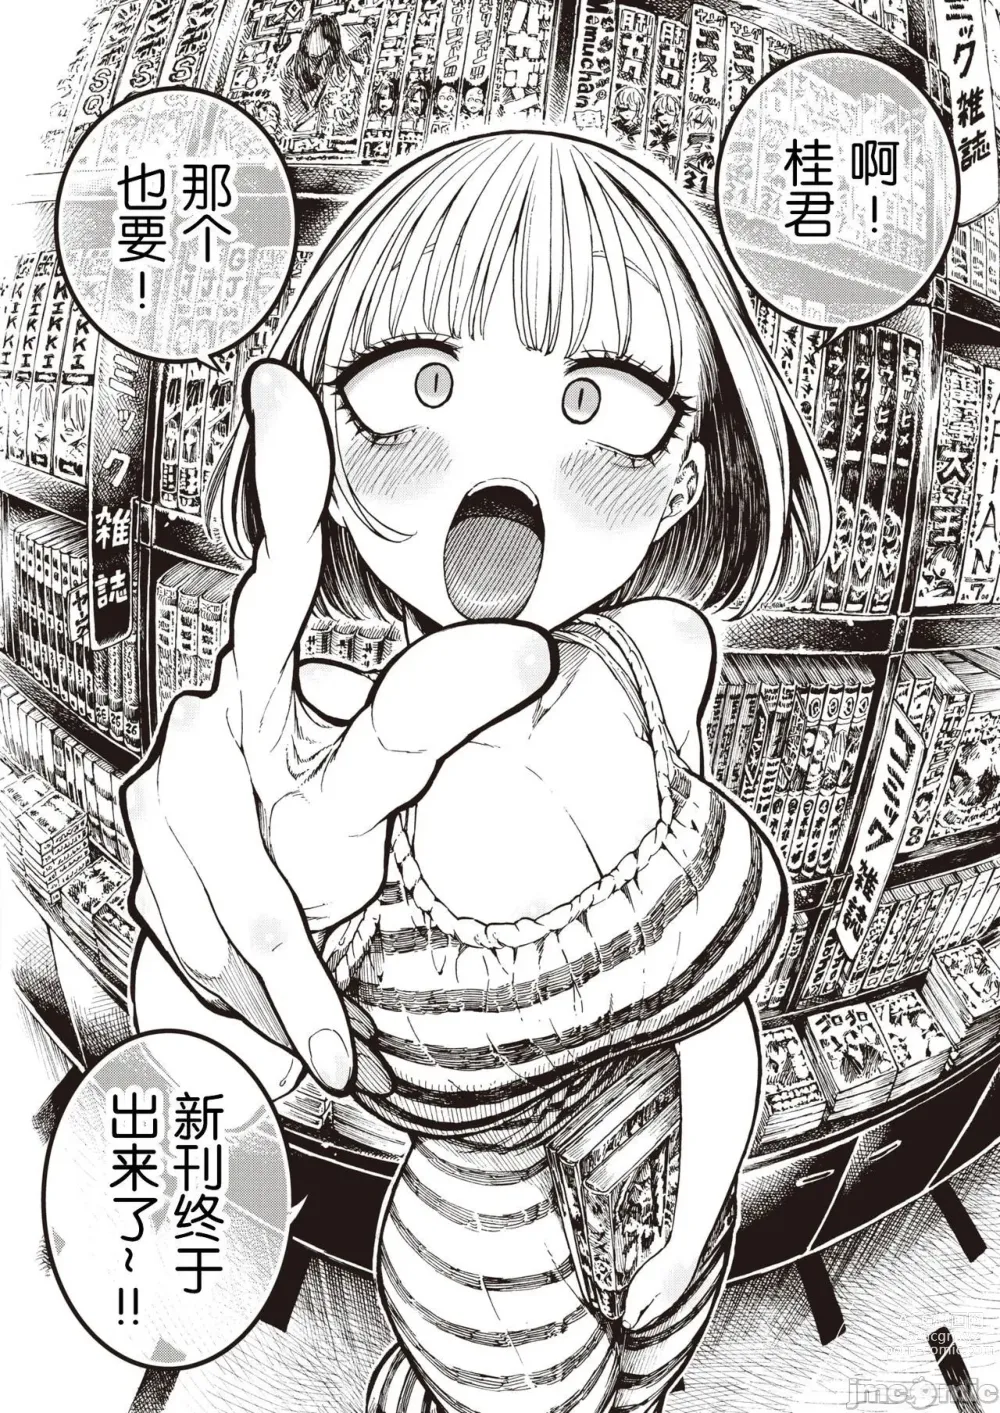 Page 3 of manga Icchuuya